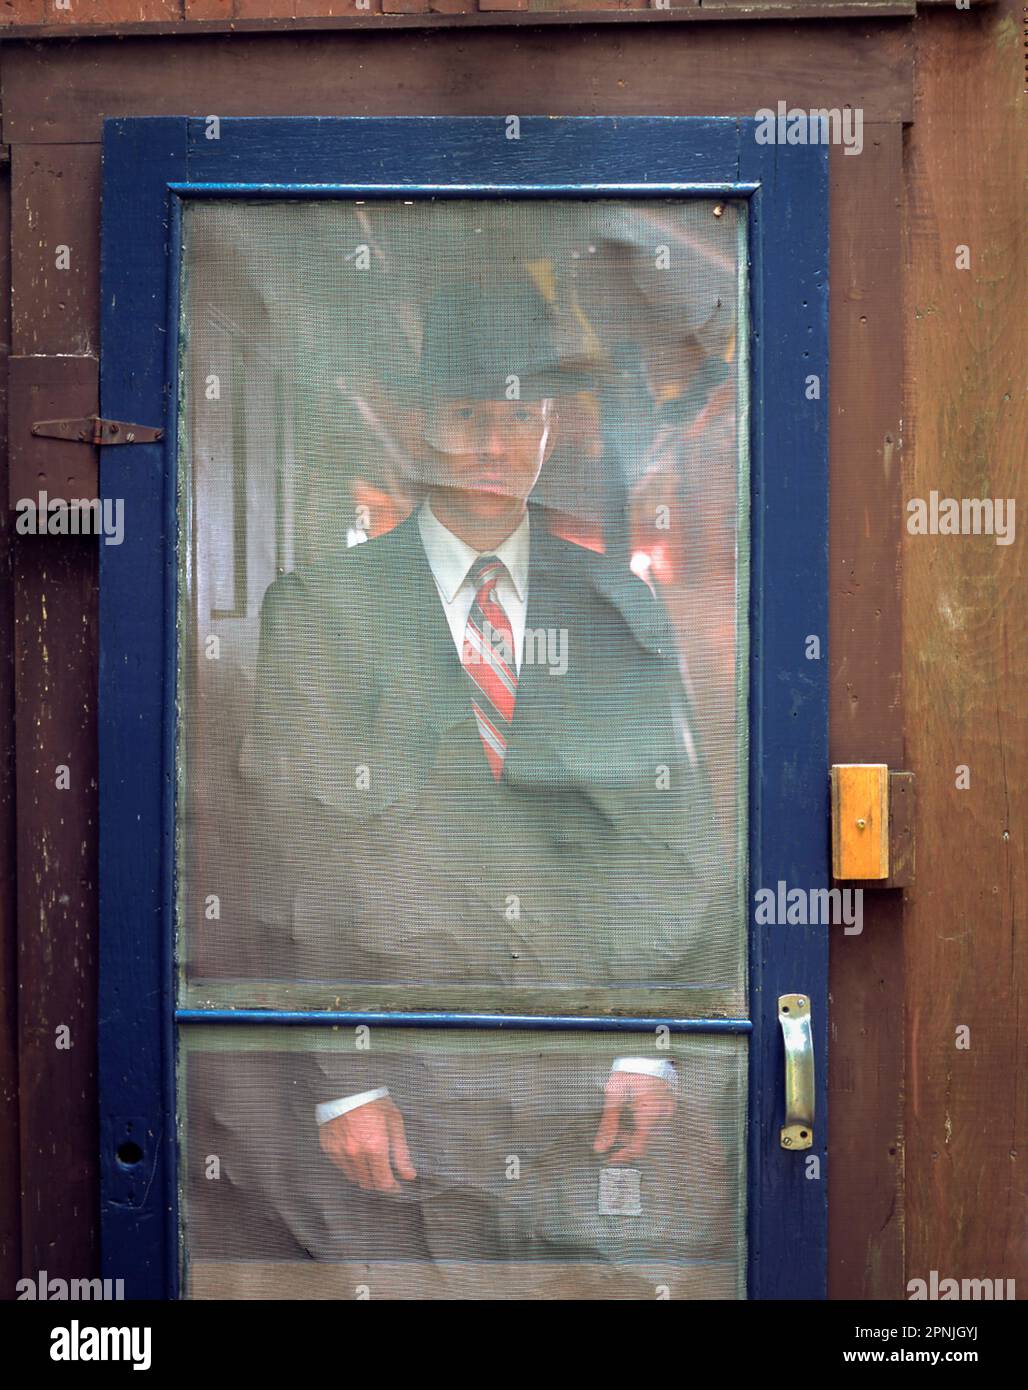 Man in suit and hat standing behind rustic screen door Stock Photo